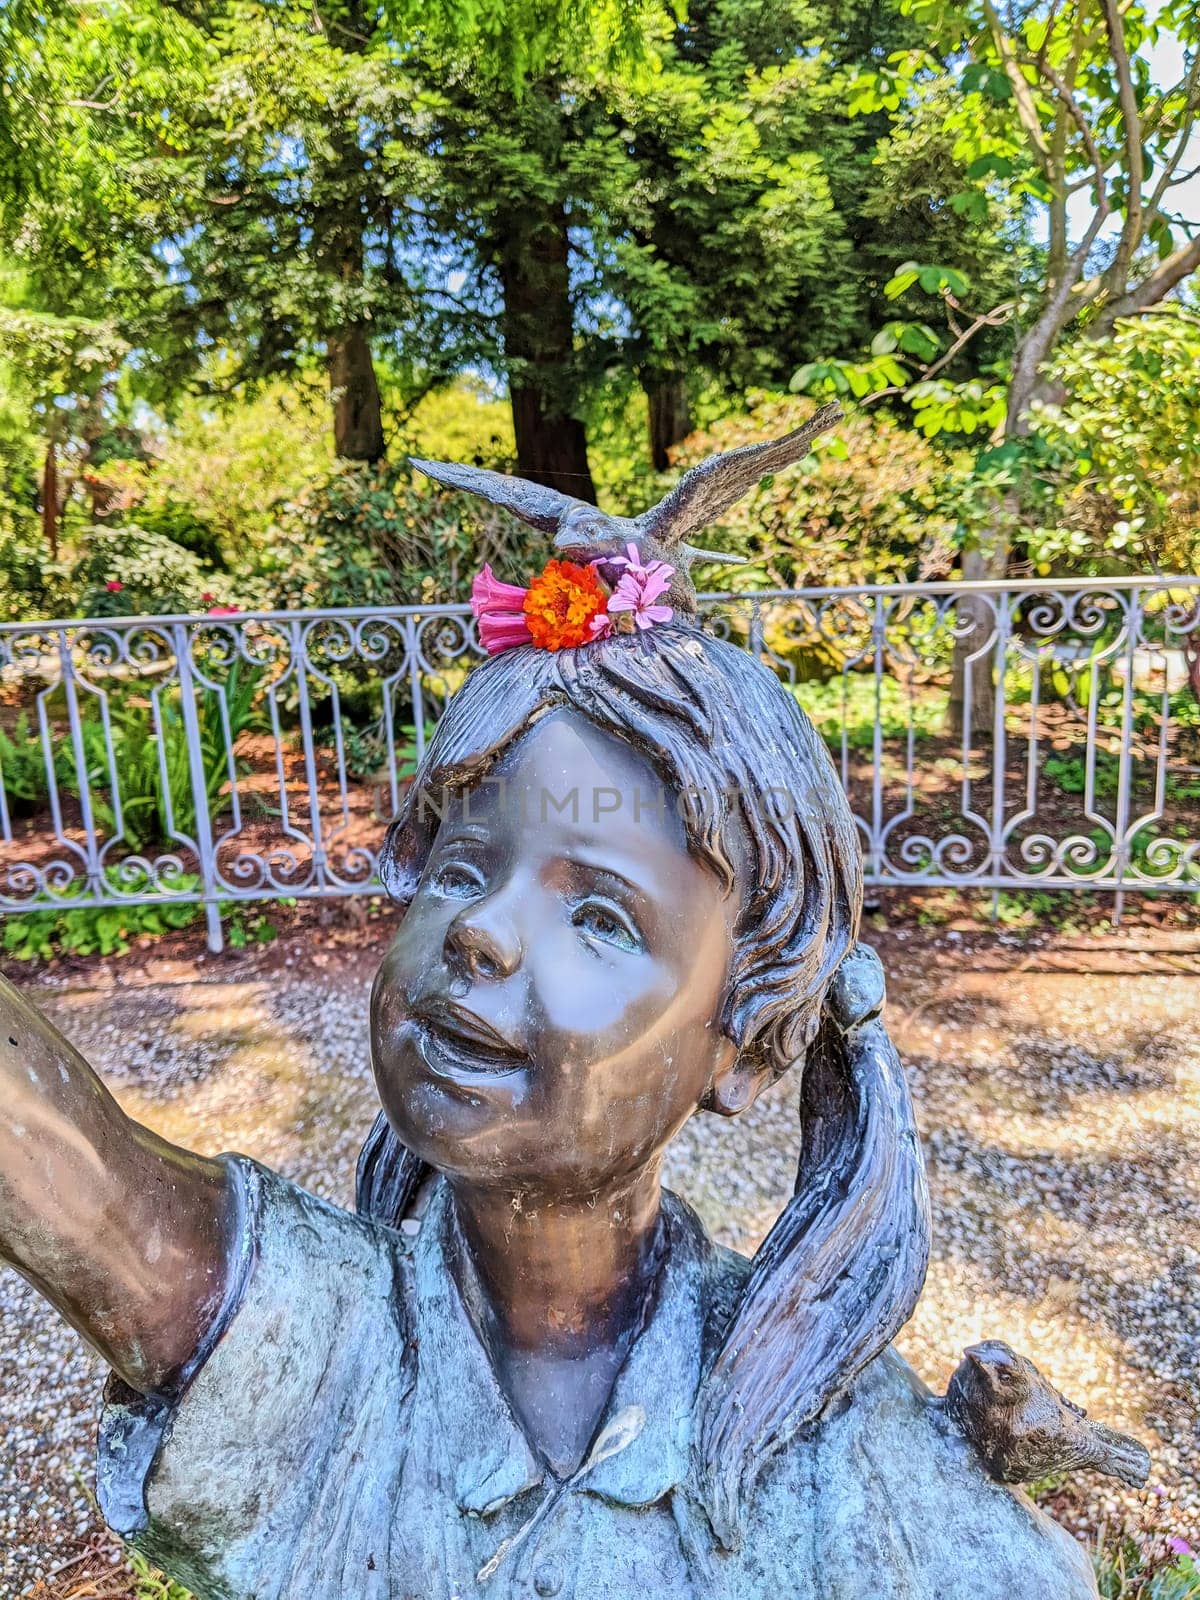 Joyful Bronze Statue of a Young Girl with Bird in a Lush Oakland Garden, California 2023